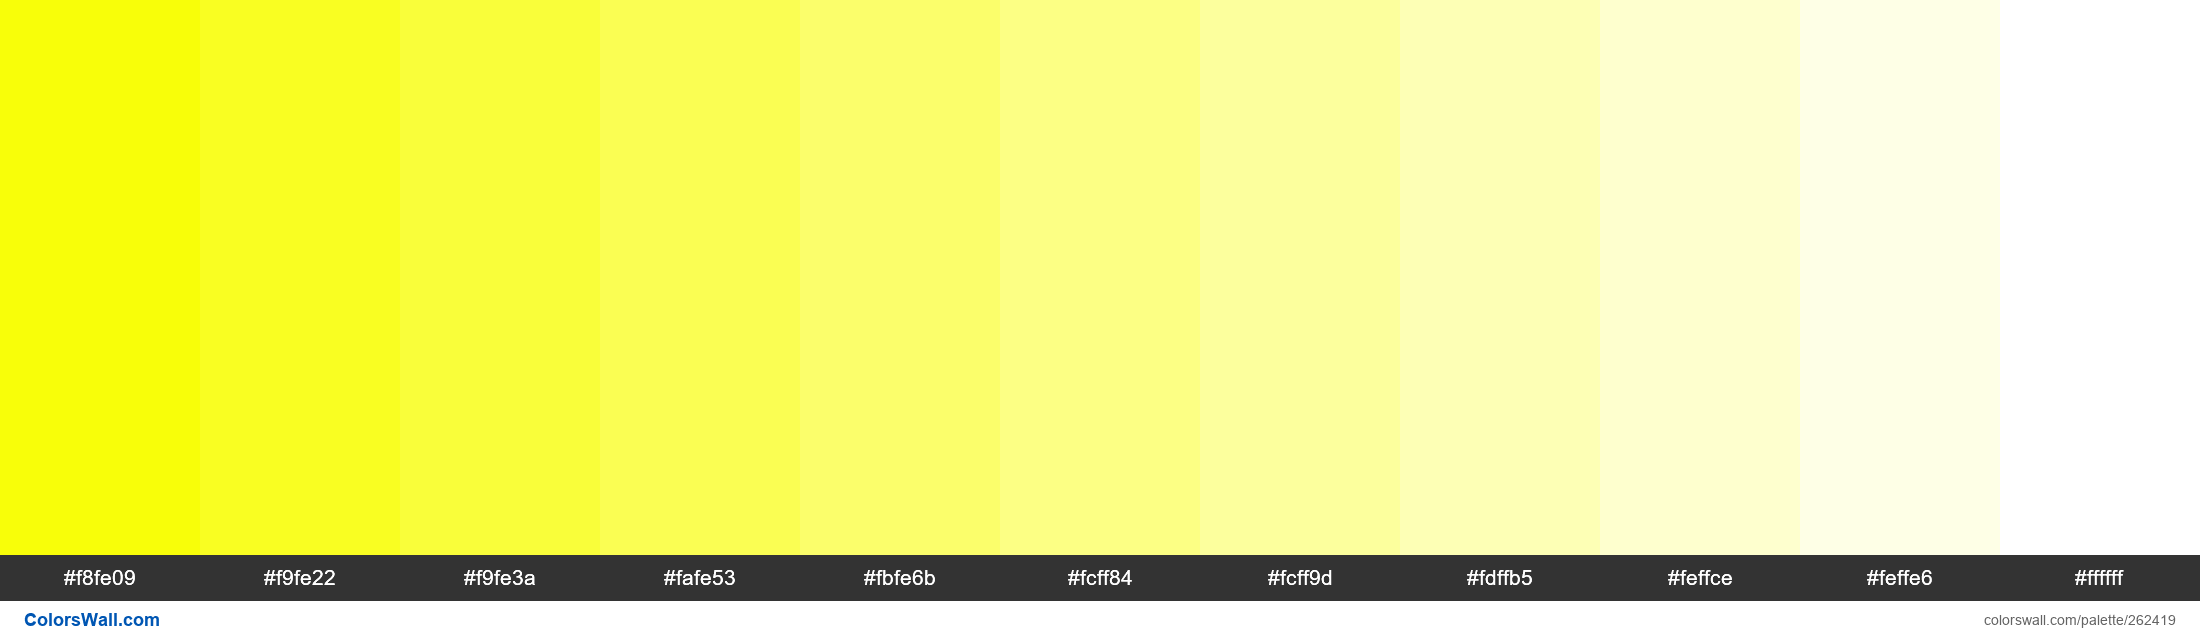 Fluorescent Lemonade colors palette - ColorsWall